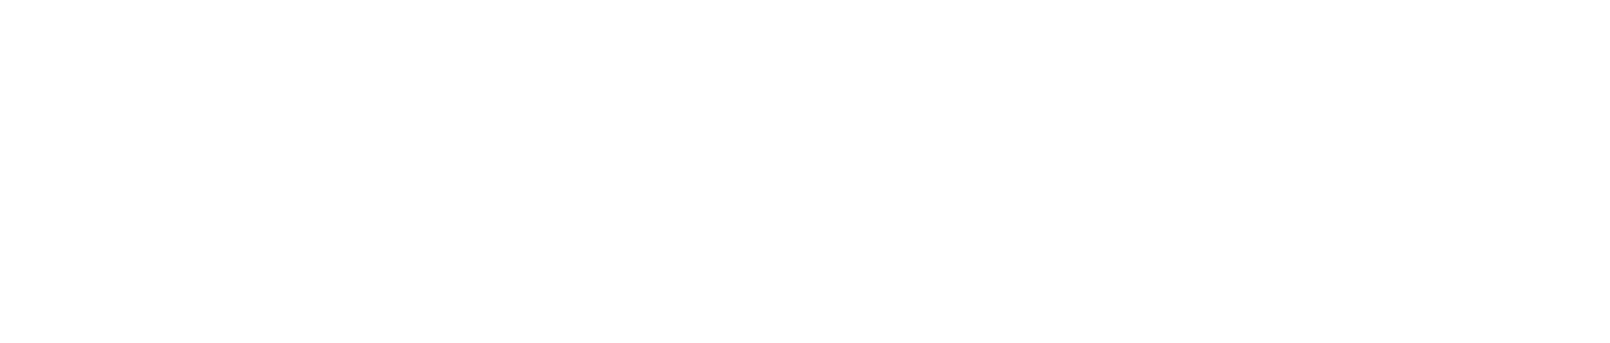 Broadstone Net Lease logo grand pour les fonds sombres (PNG transparent)